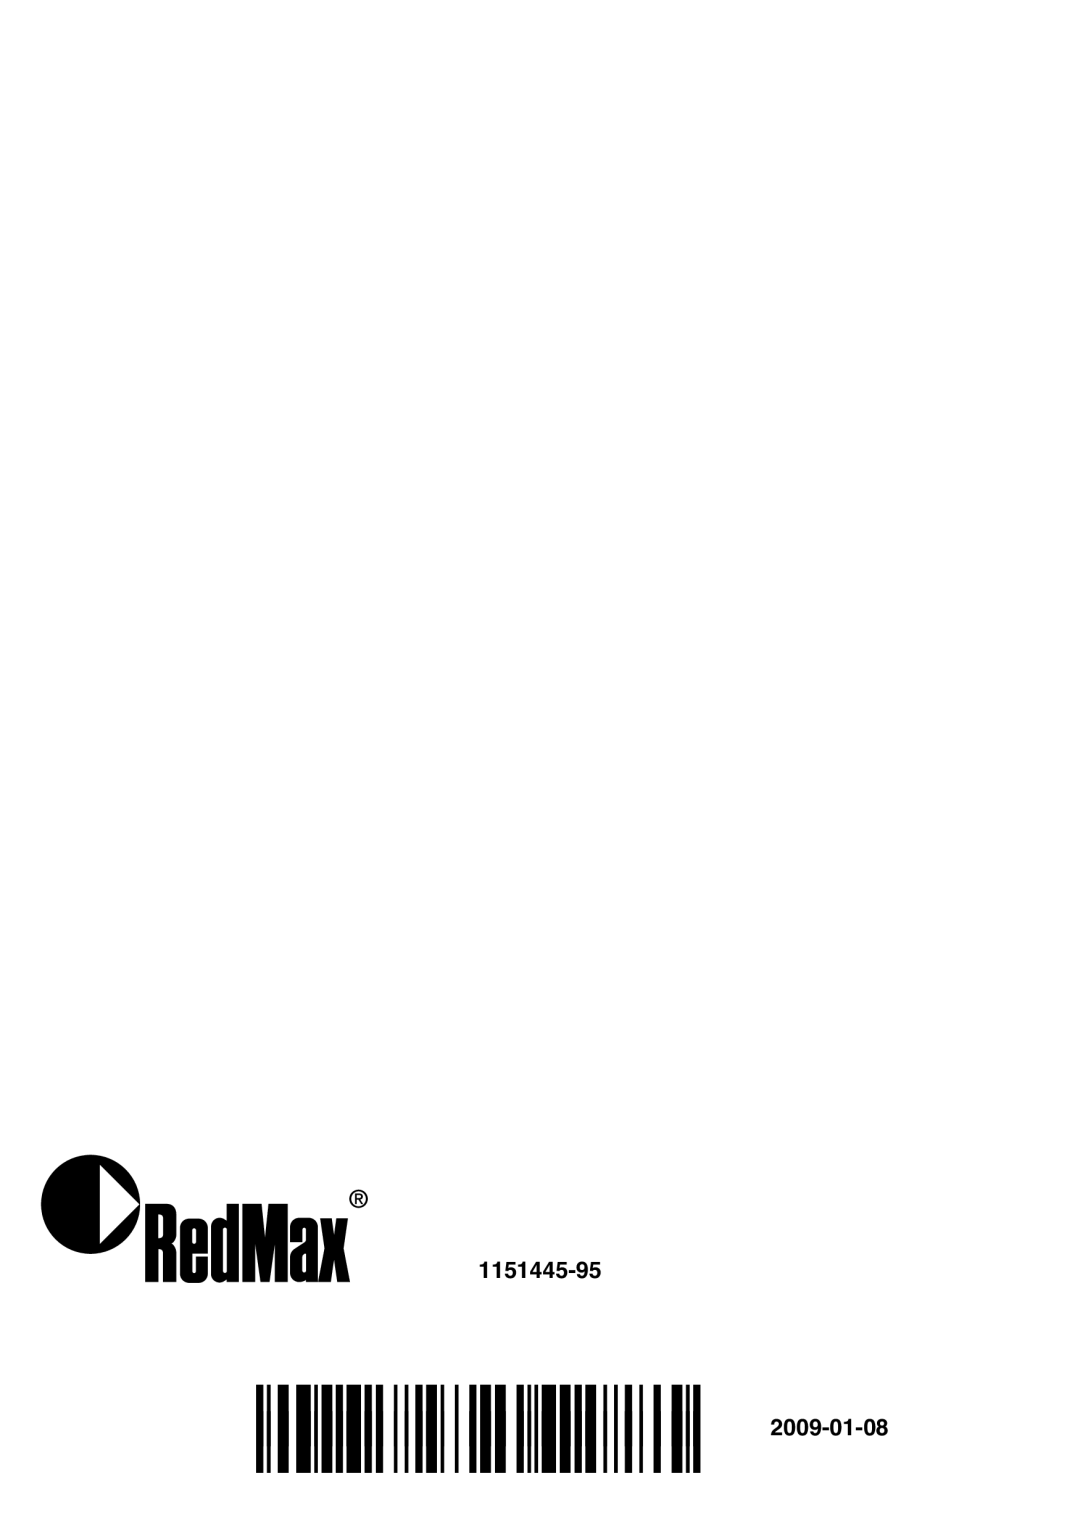 RedMax G5300 manual 1151445-95, ´z+SL¶5&¨ ´z+SL¶5&¨ 